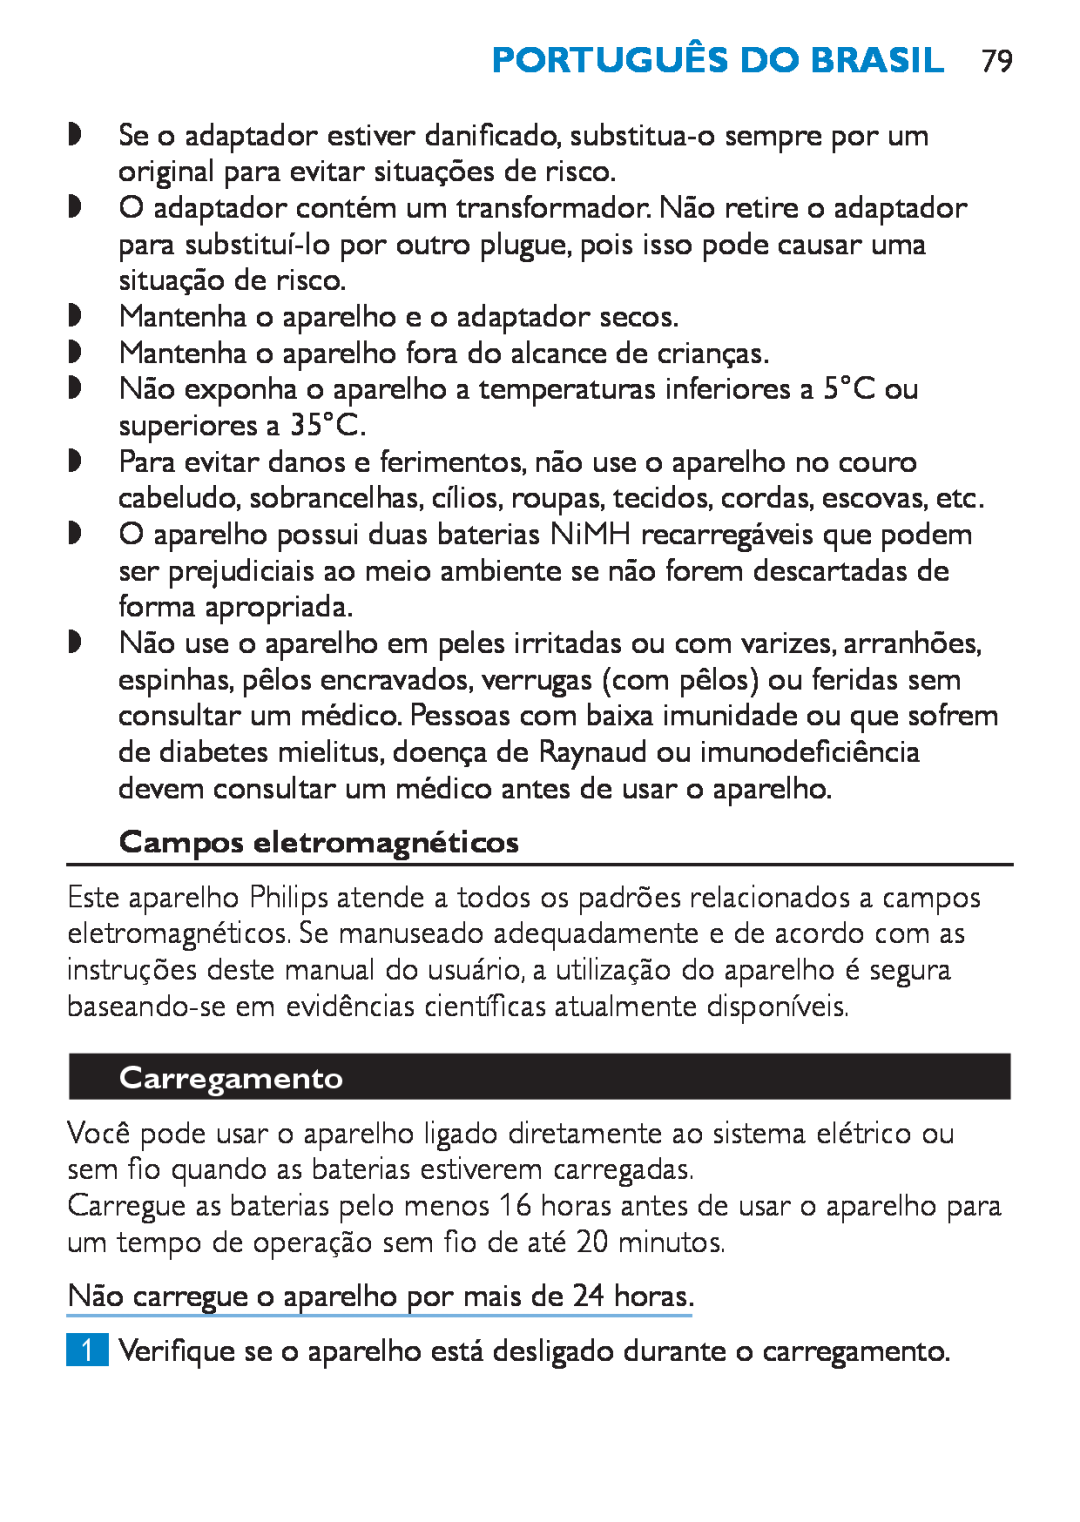 Philips HP6490 manual Português do Brasil, Campos eletromagnéticos, Carregamento 